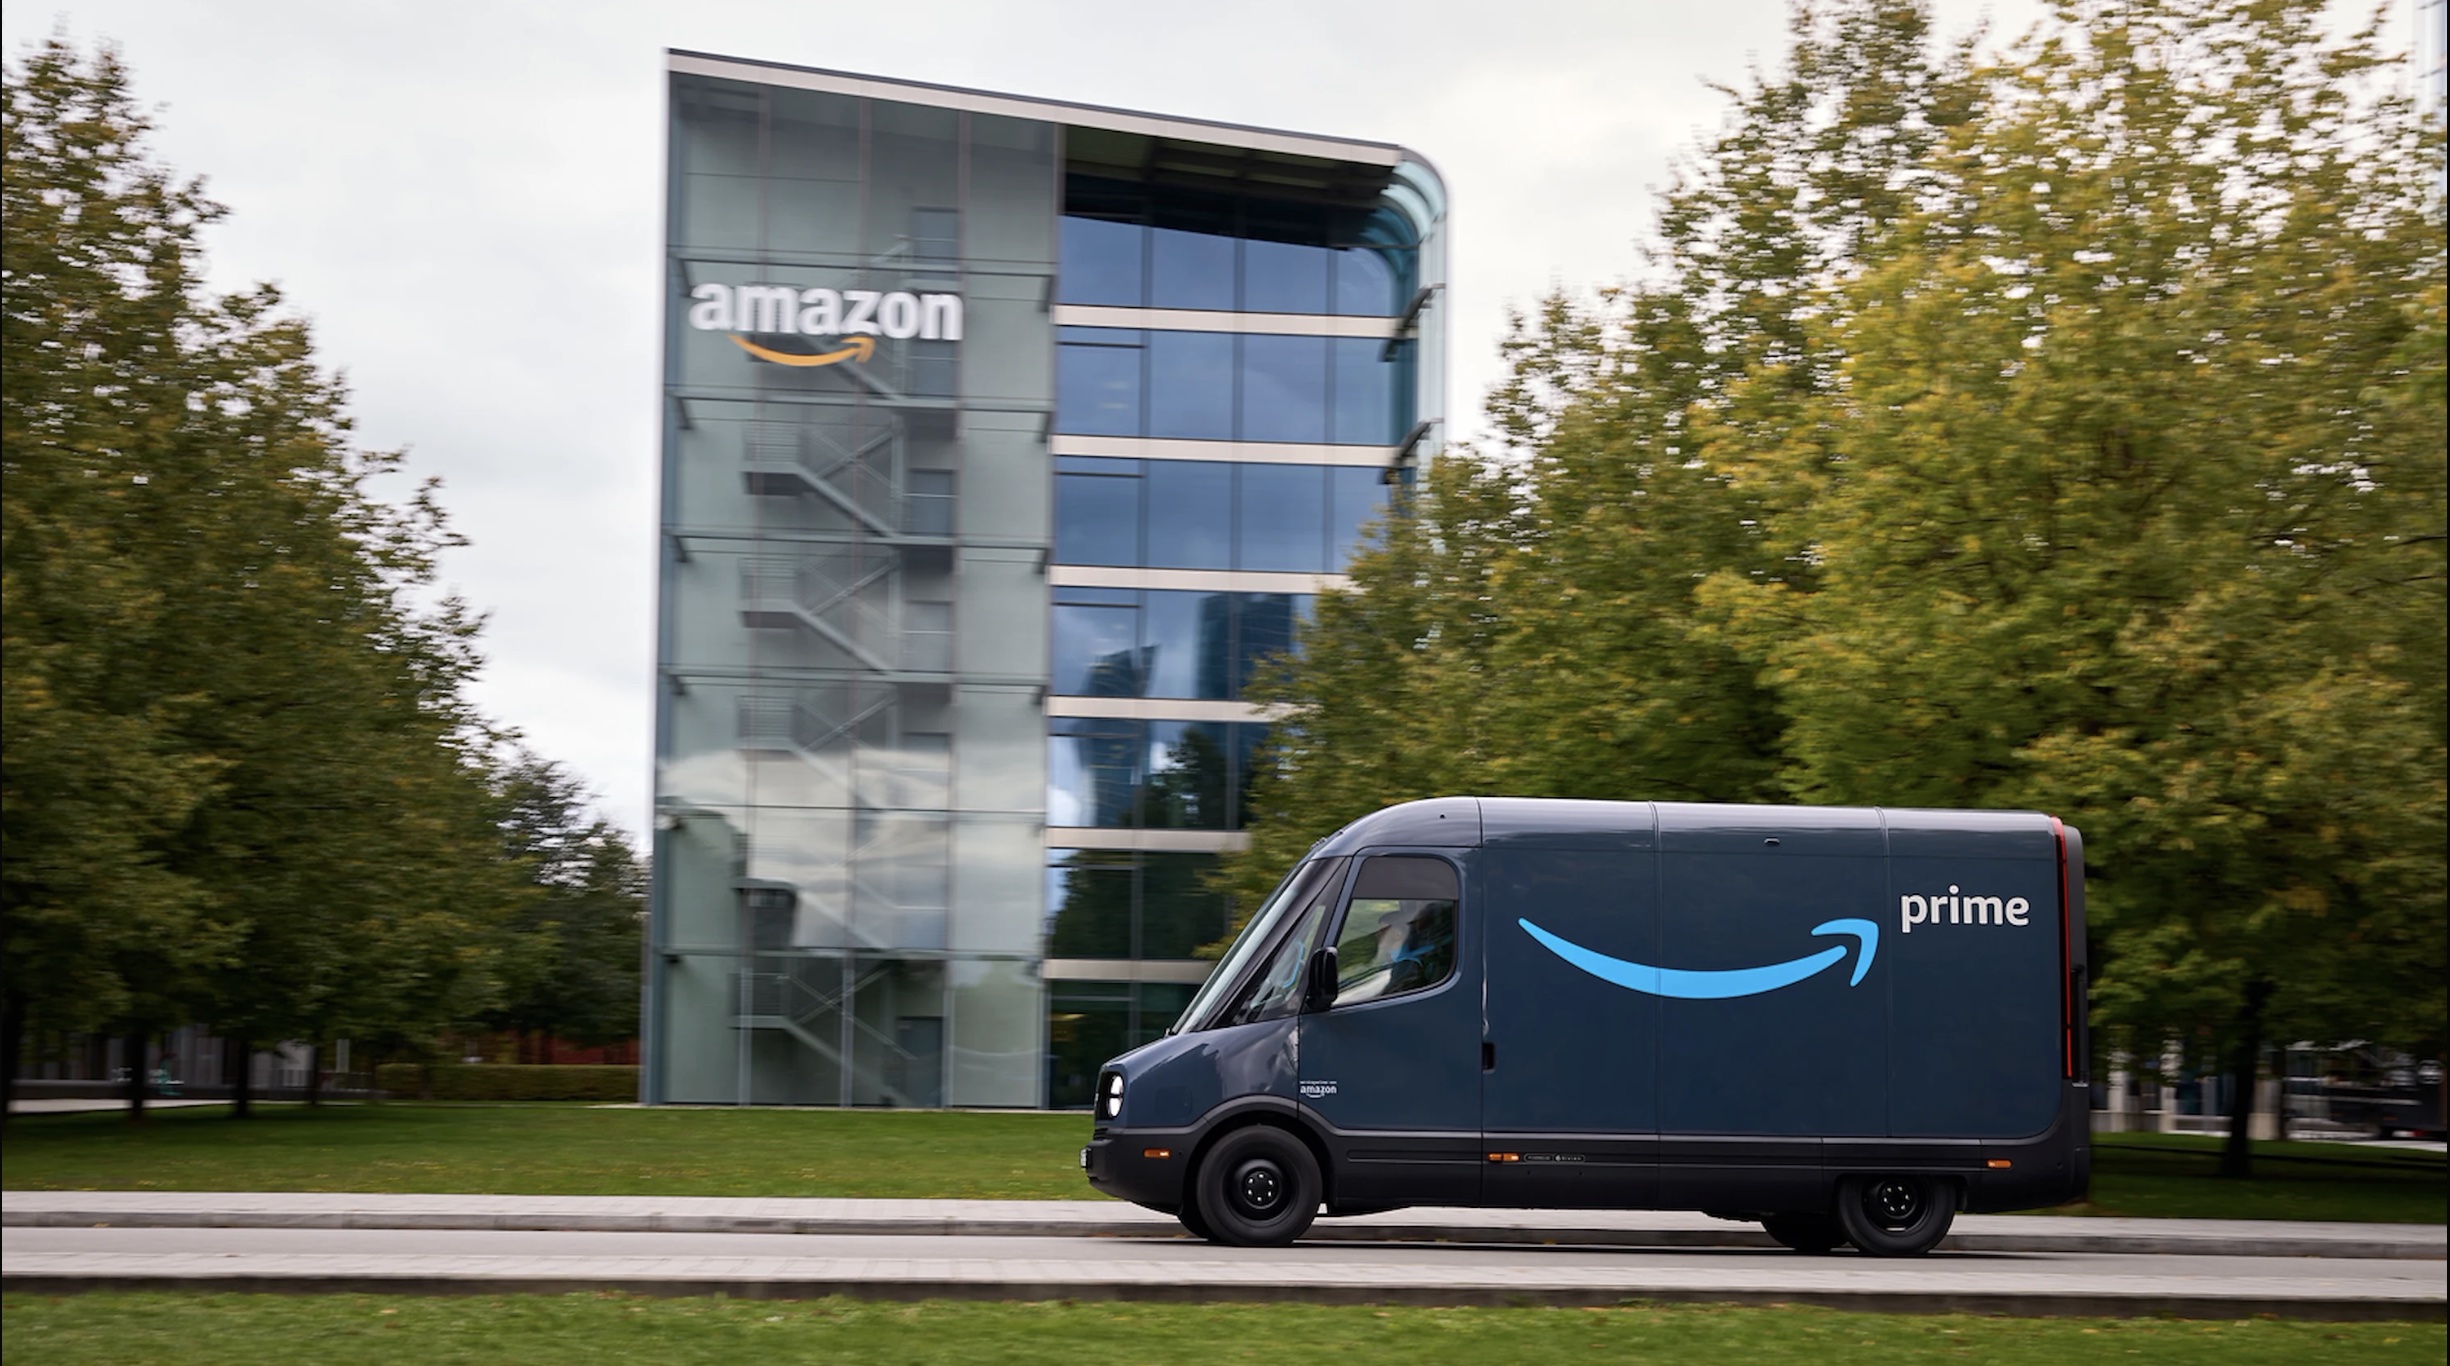 Rivian’s Amazon delivery van arrives in Europe